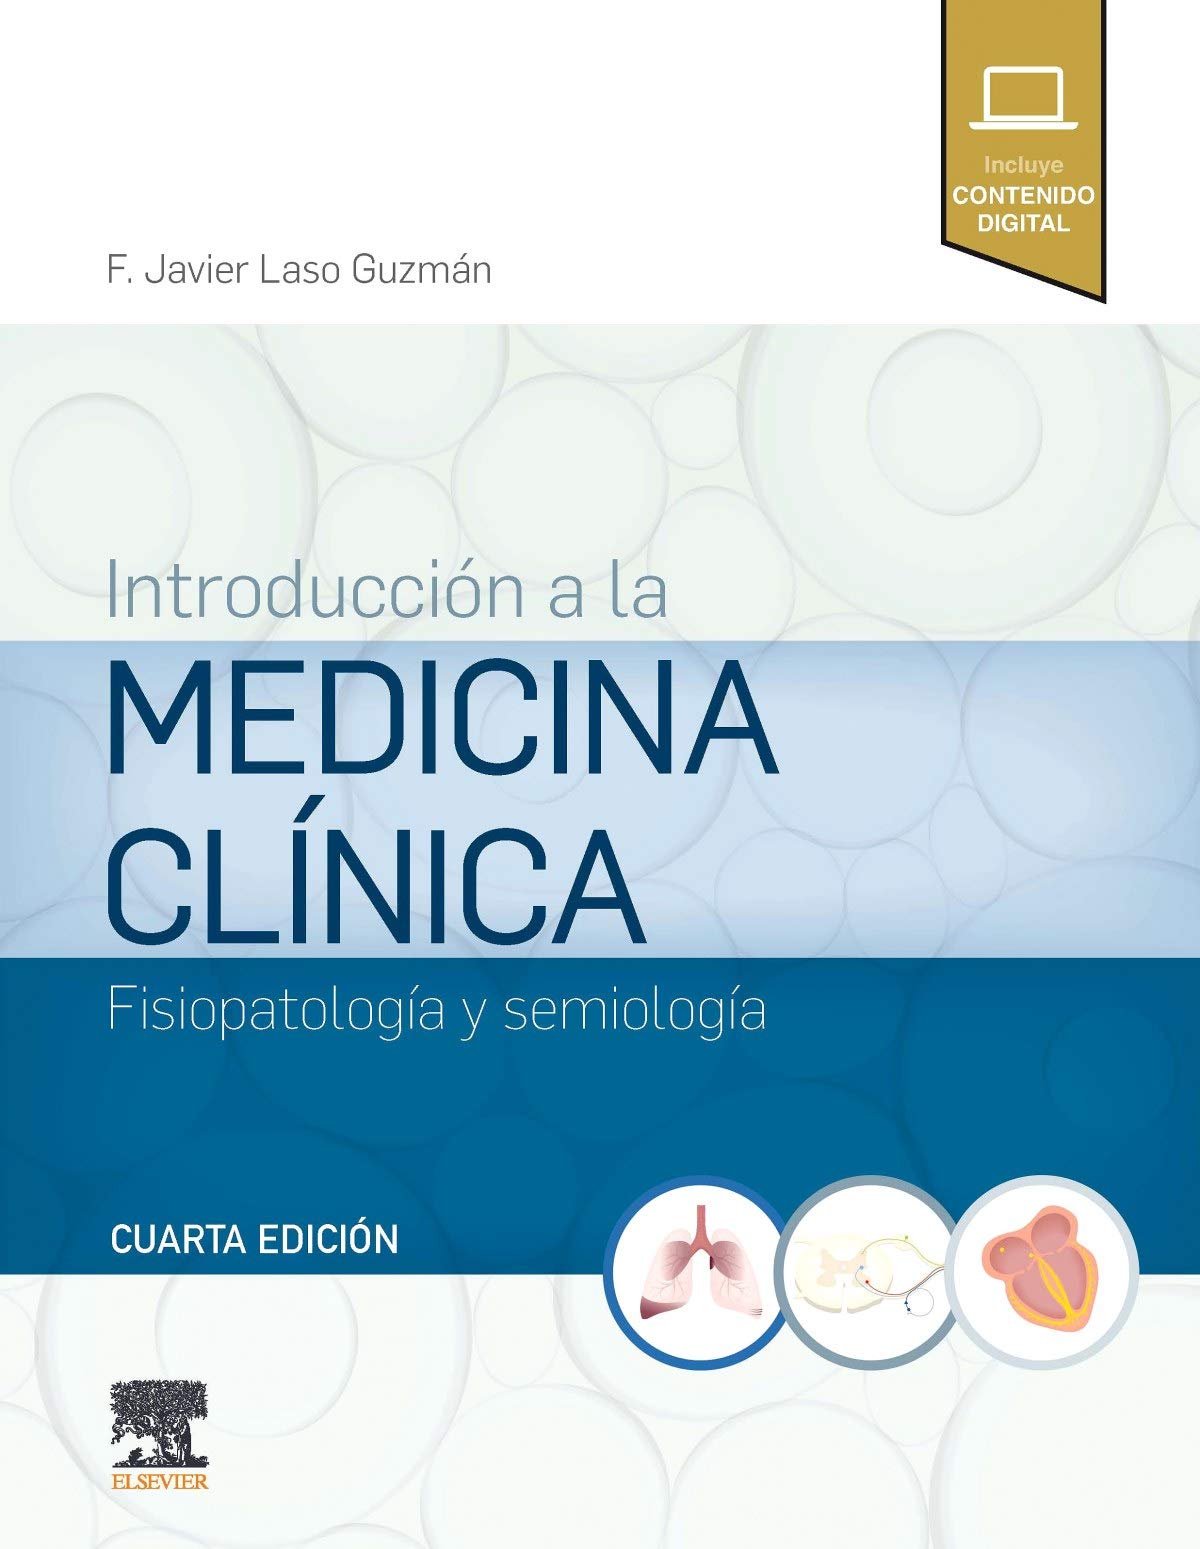 Introducción a la Medicina Clínica. Fisiopatología y Semiología